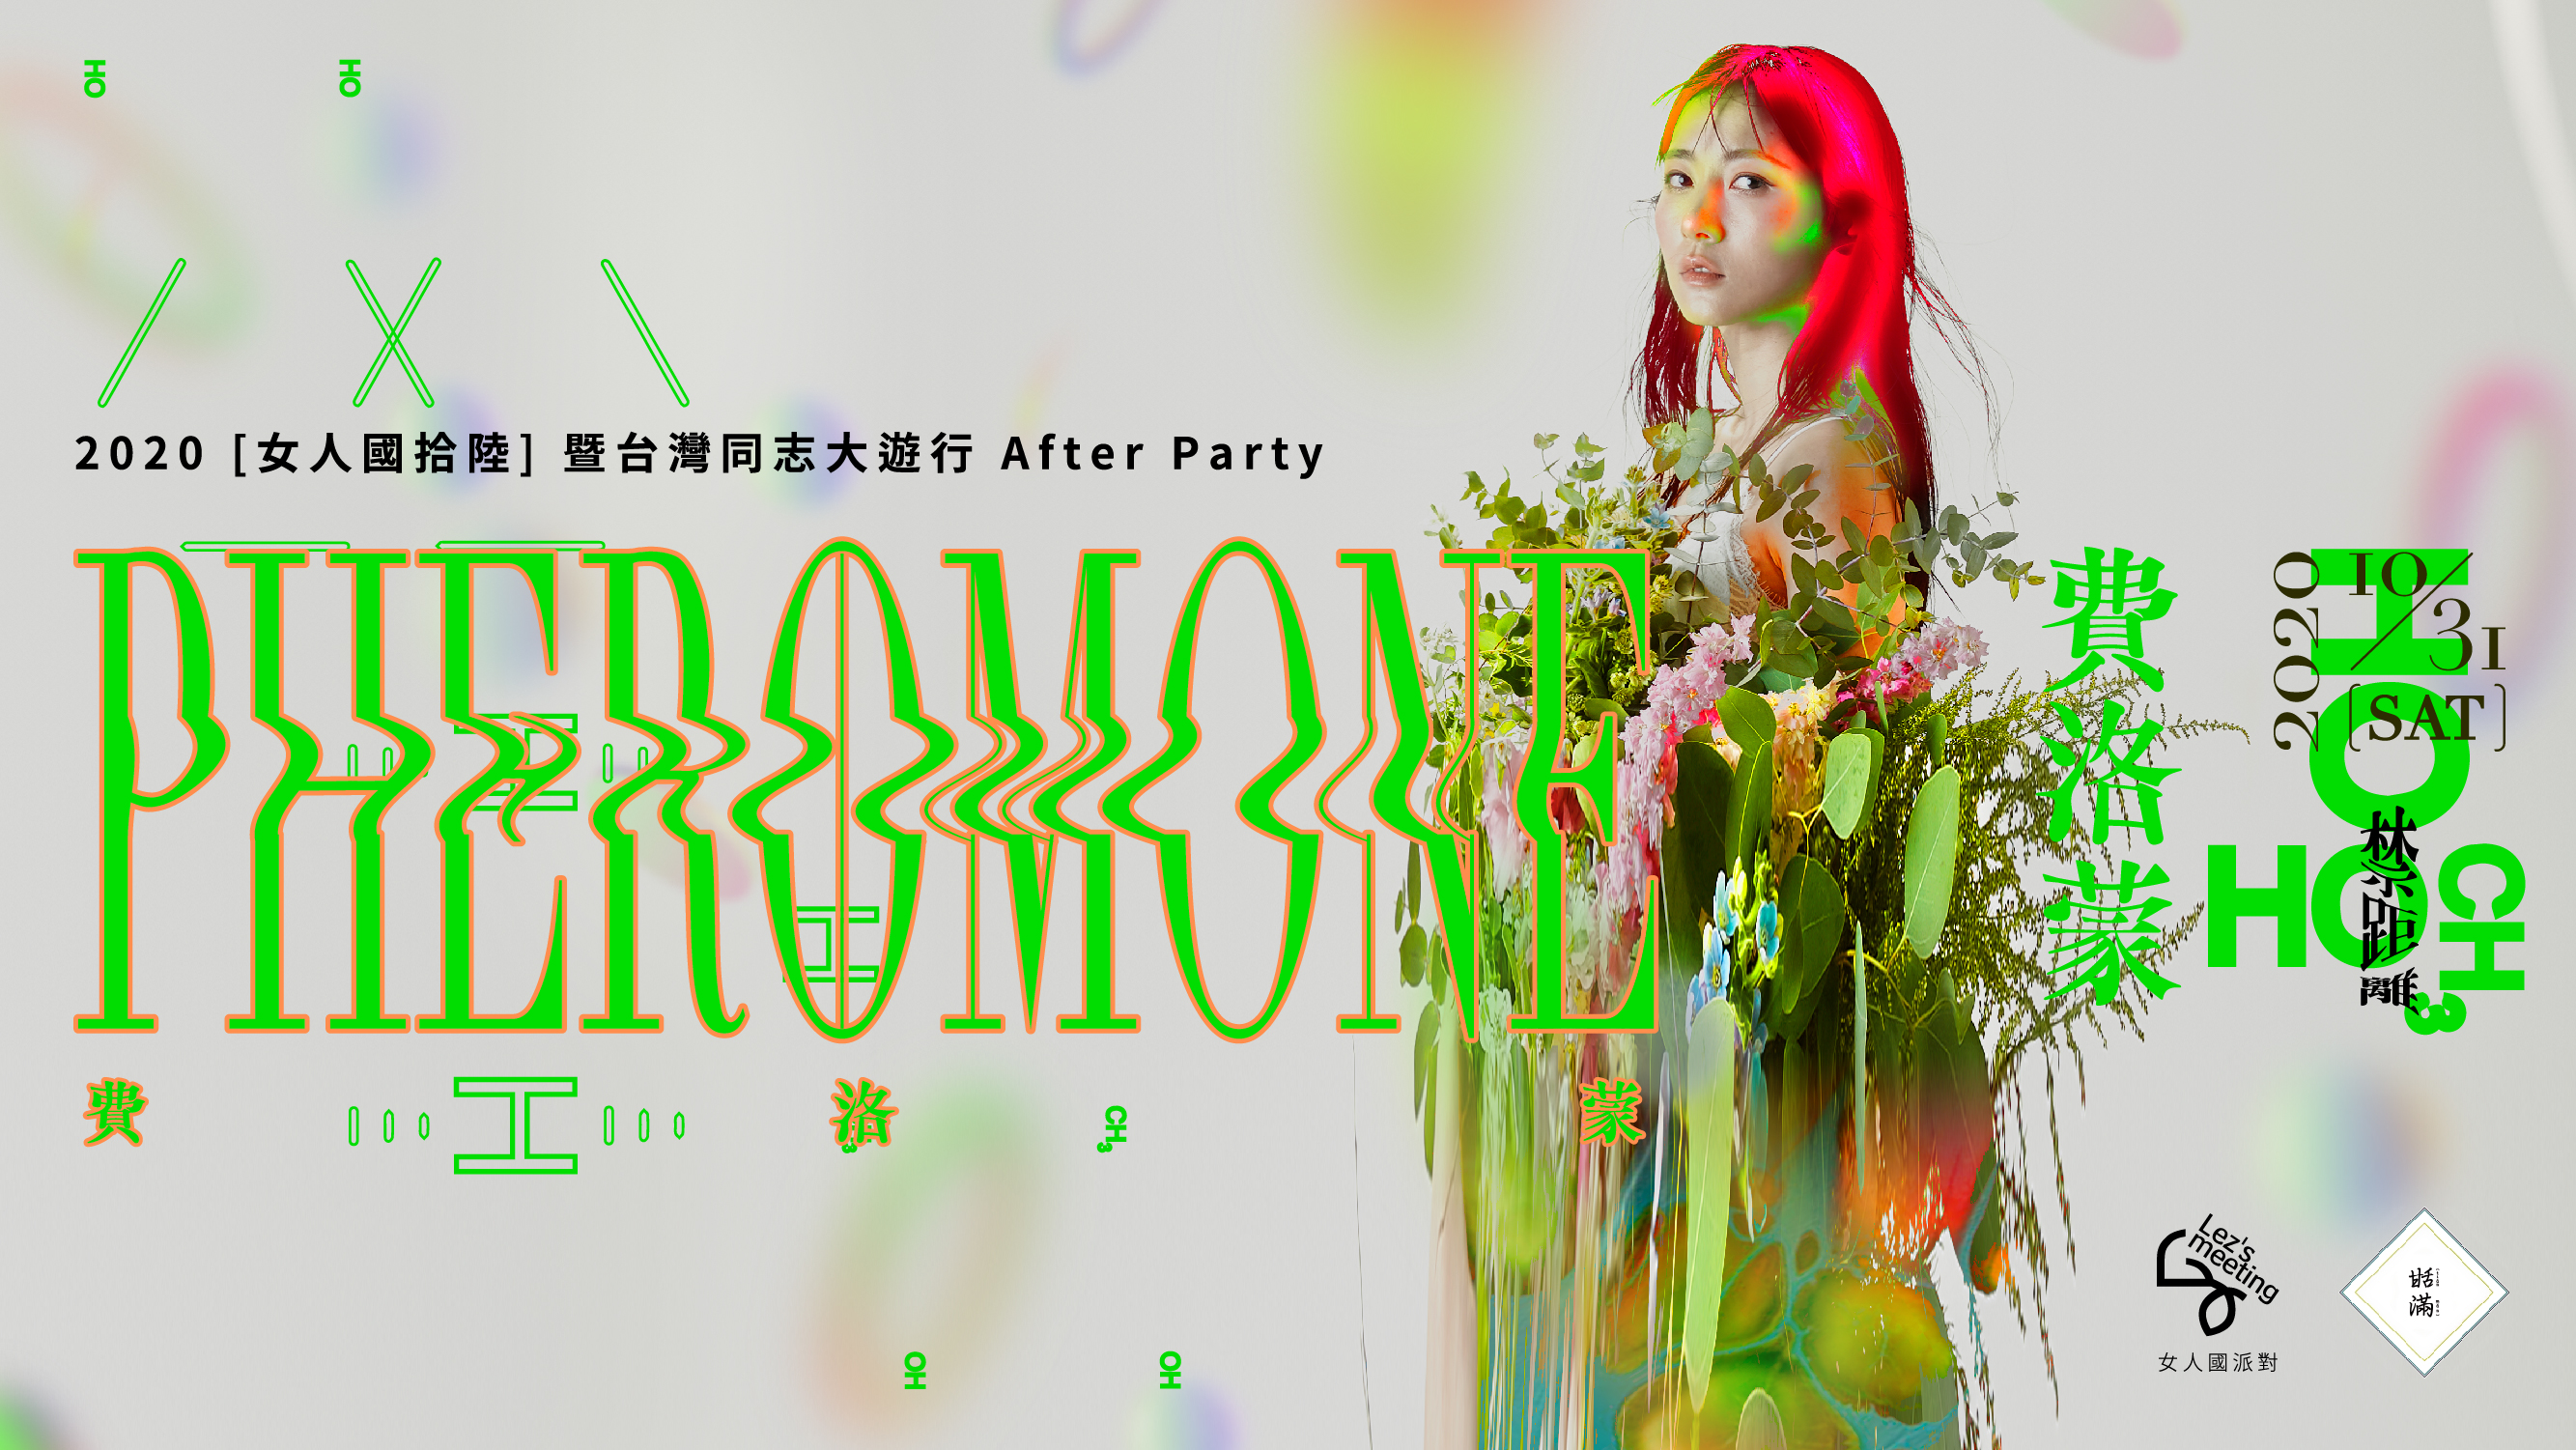 2020 Gay Pride After Party 【Pheromone】  Lez's Meeting女人國 Sisteenth 